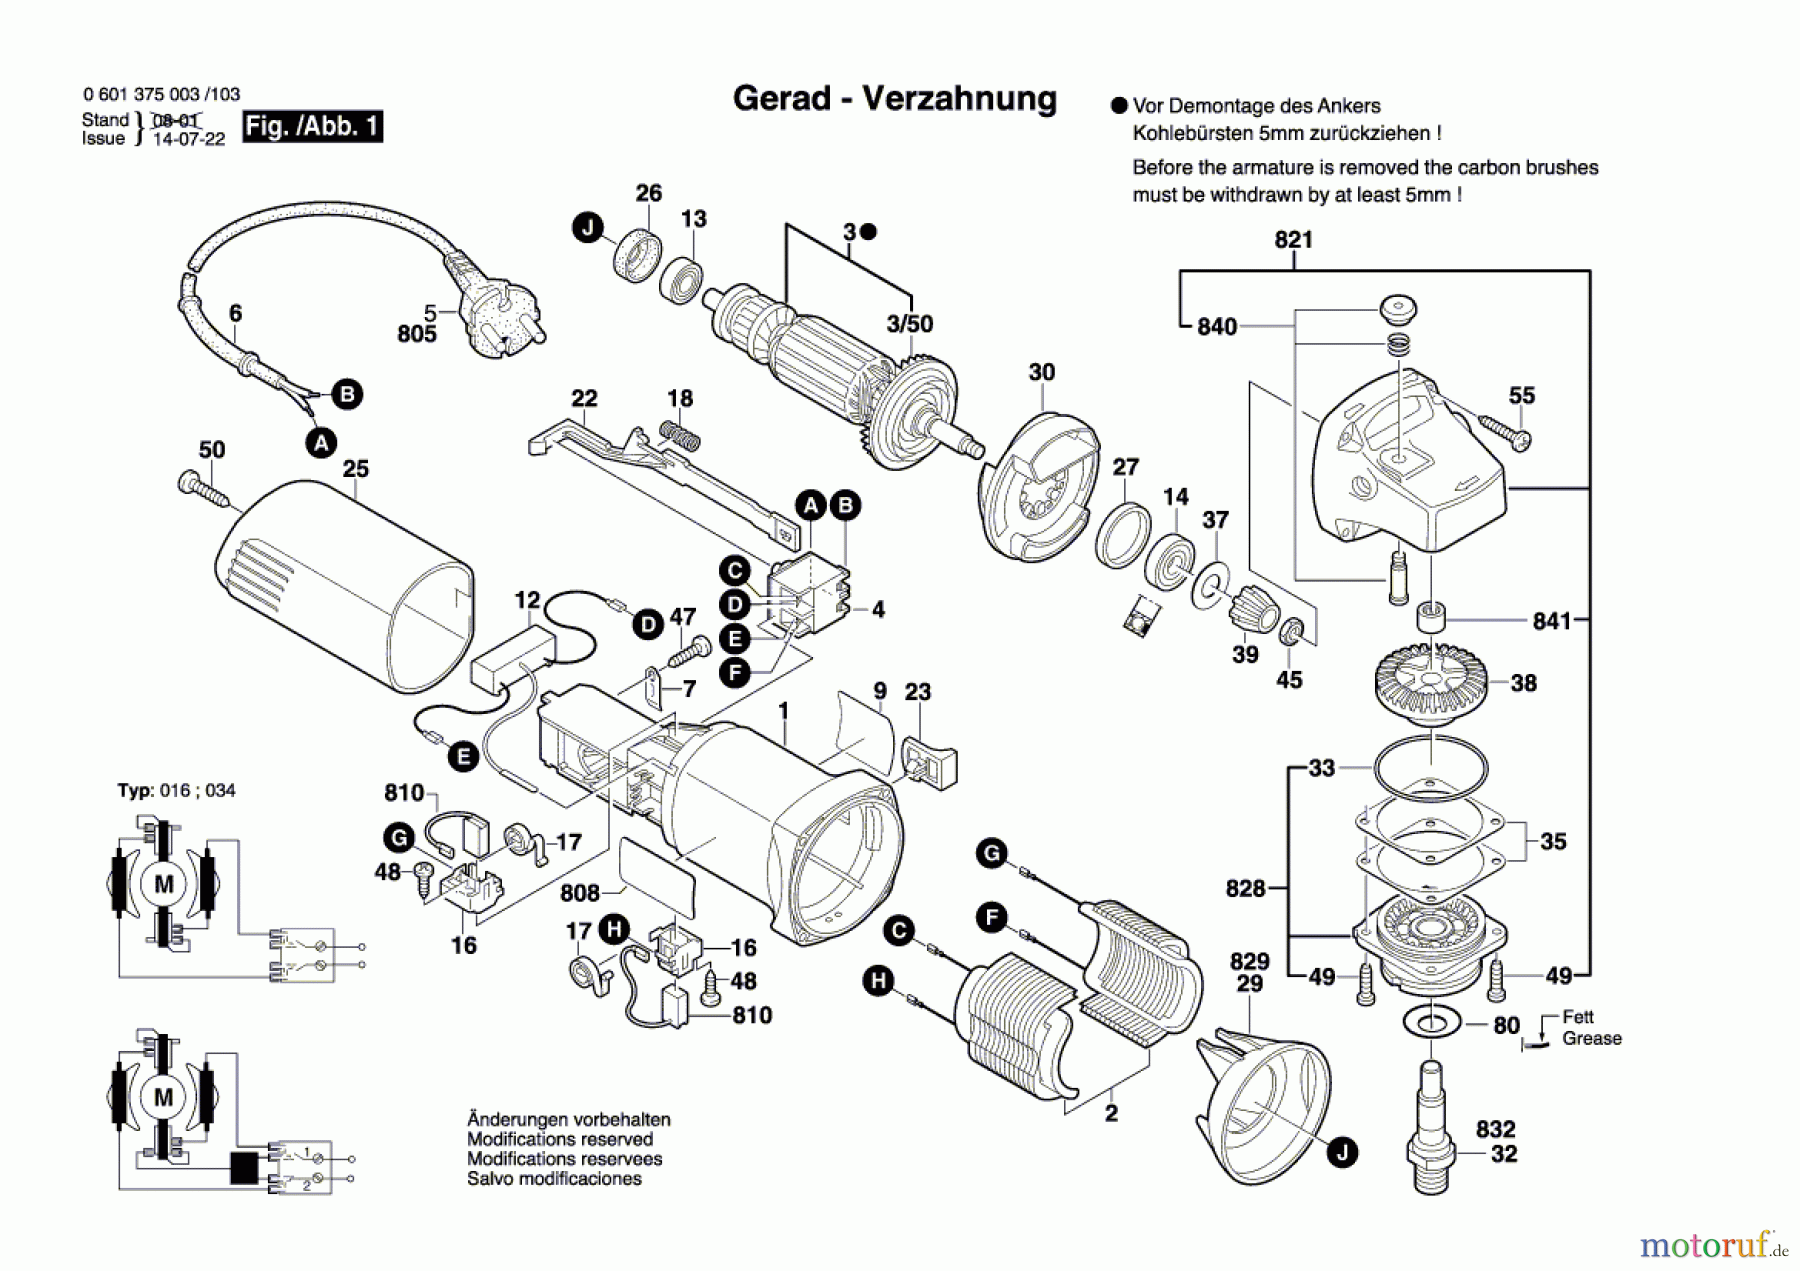  Bosch Werkzeug Winkelschleifer GWS 6-115 Seite 1